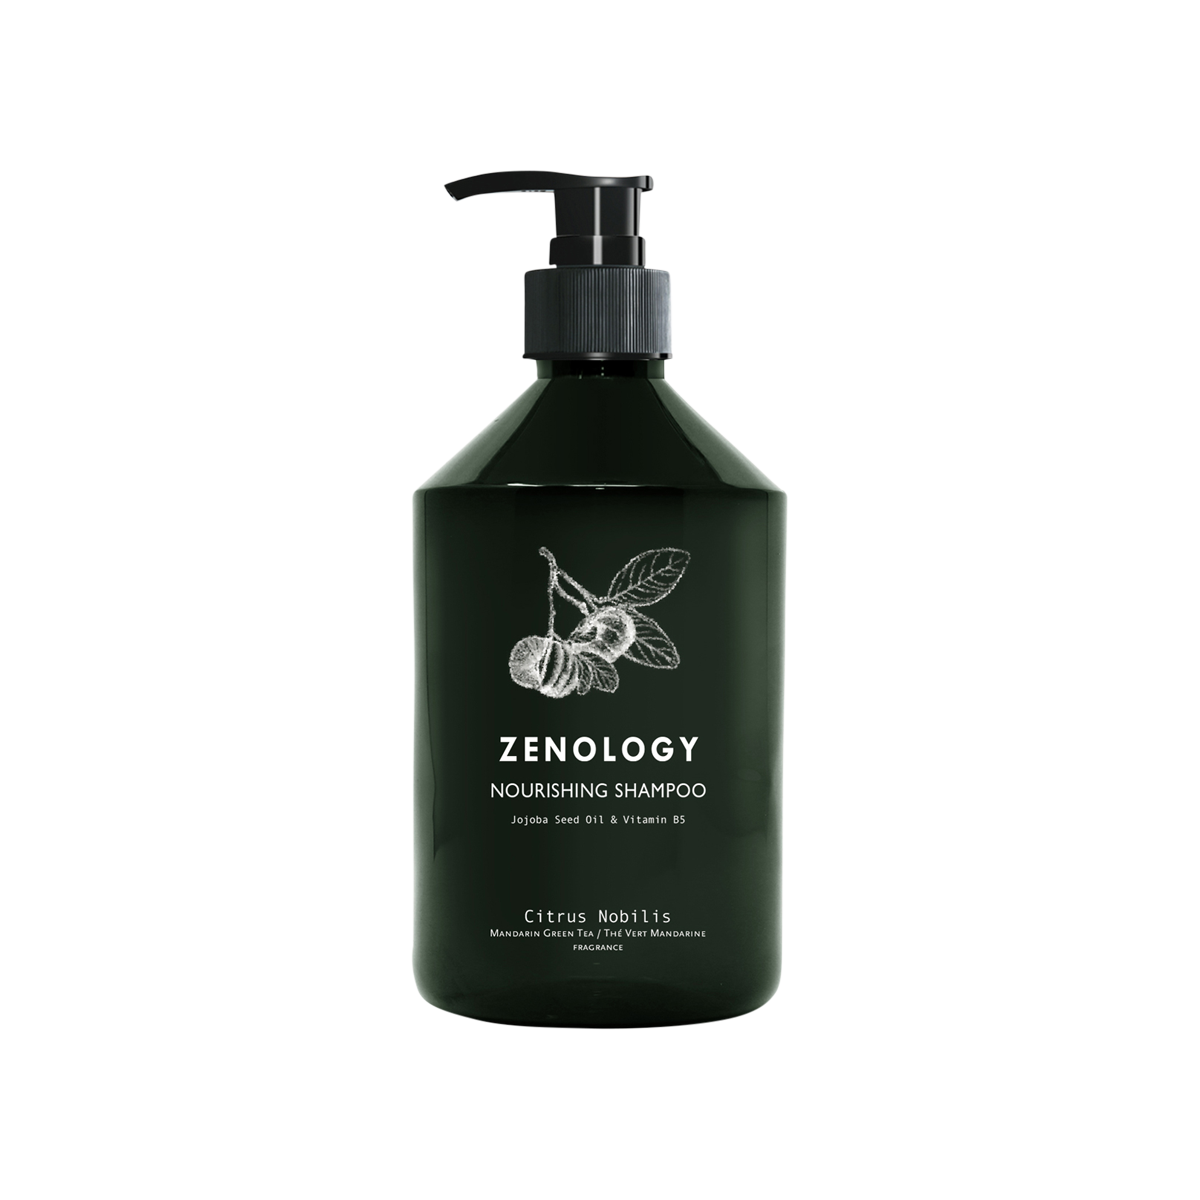 Zenology - Citrus Nobilis Nourishing Shampoo